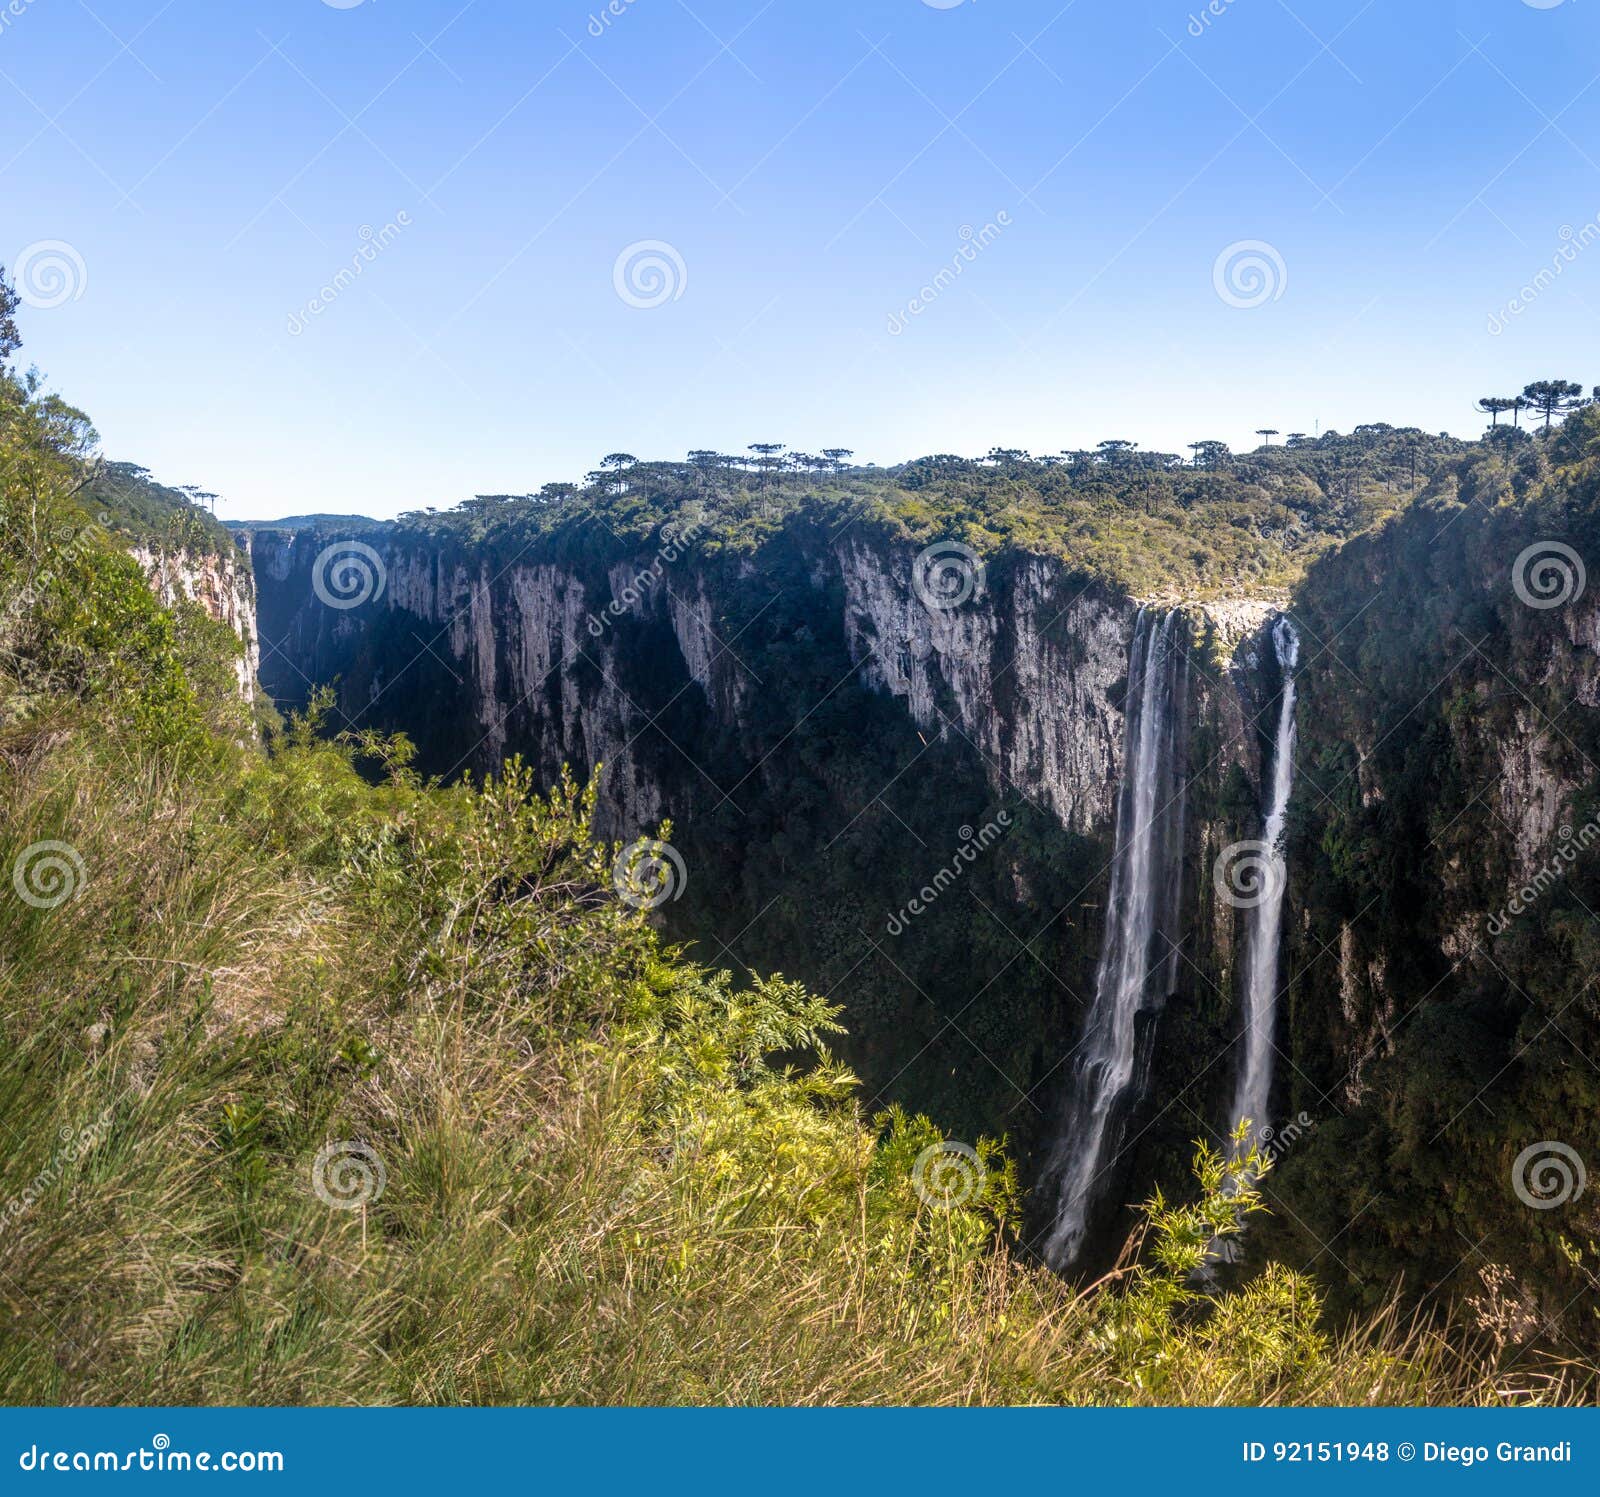 waterfall of itaimbezinho canyon at aparados da serra national park - cambara do sul, rio grande do sul, brazil